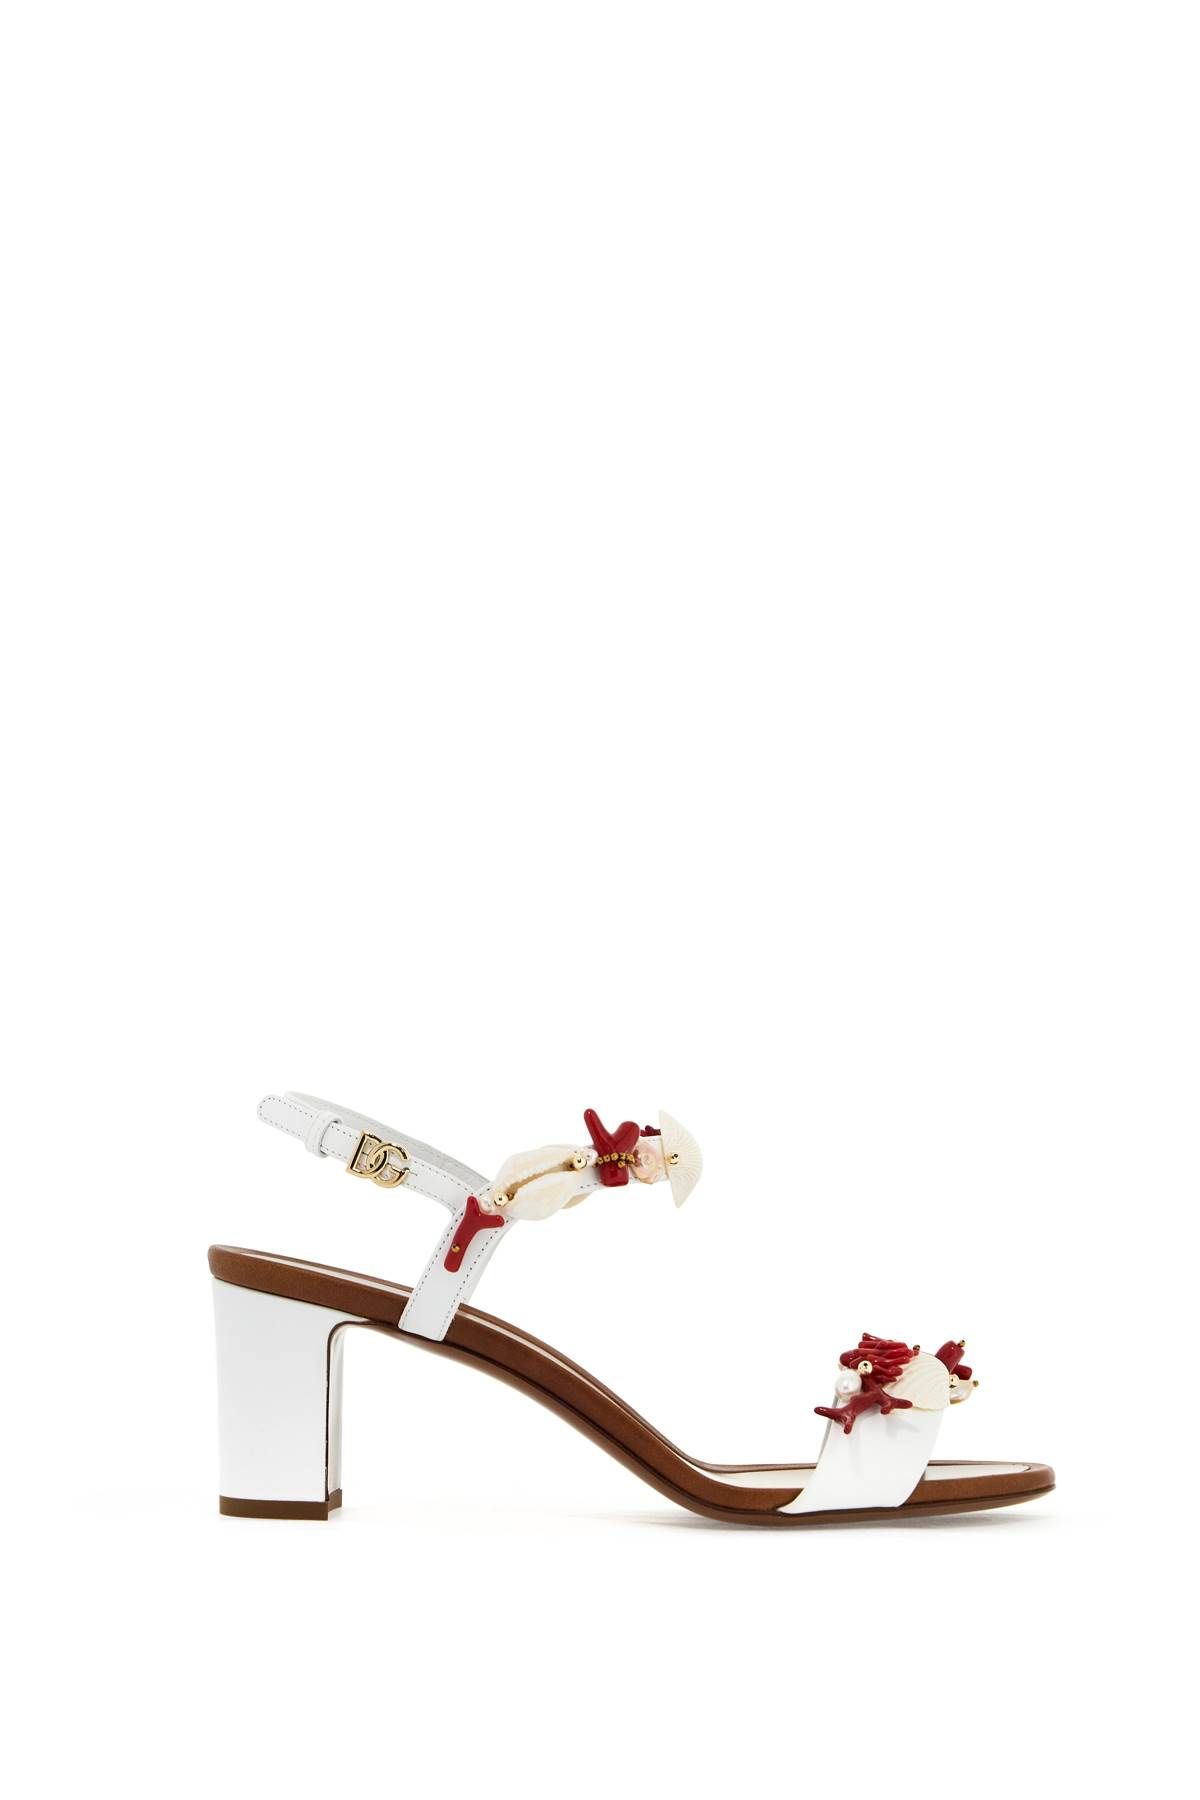 Dolce & Gabbana DOLCE & GABBANA "nappa sandals with coral embellishments